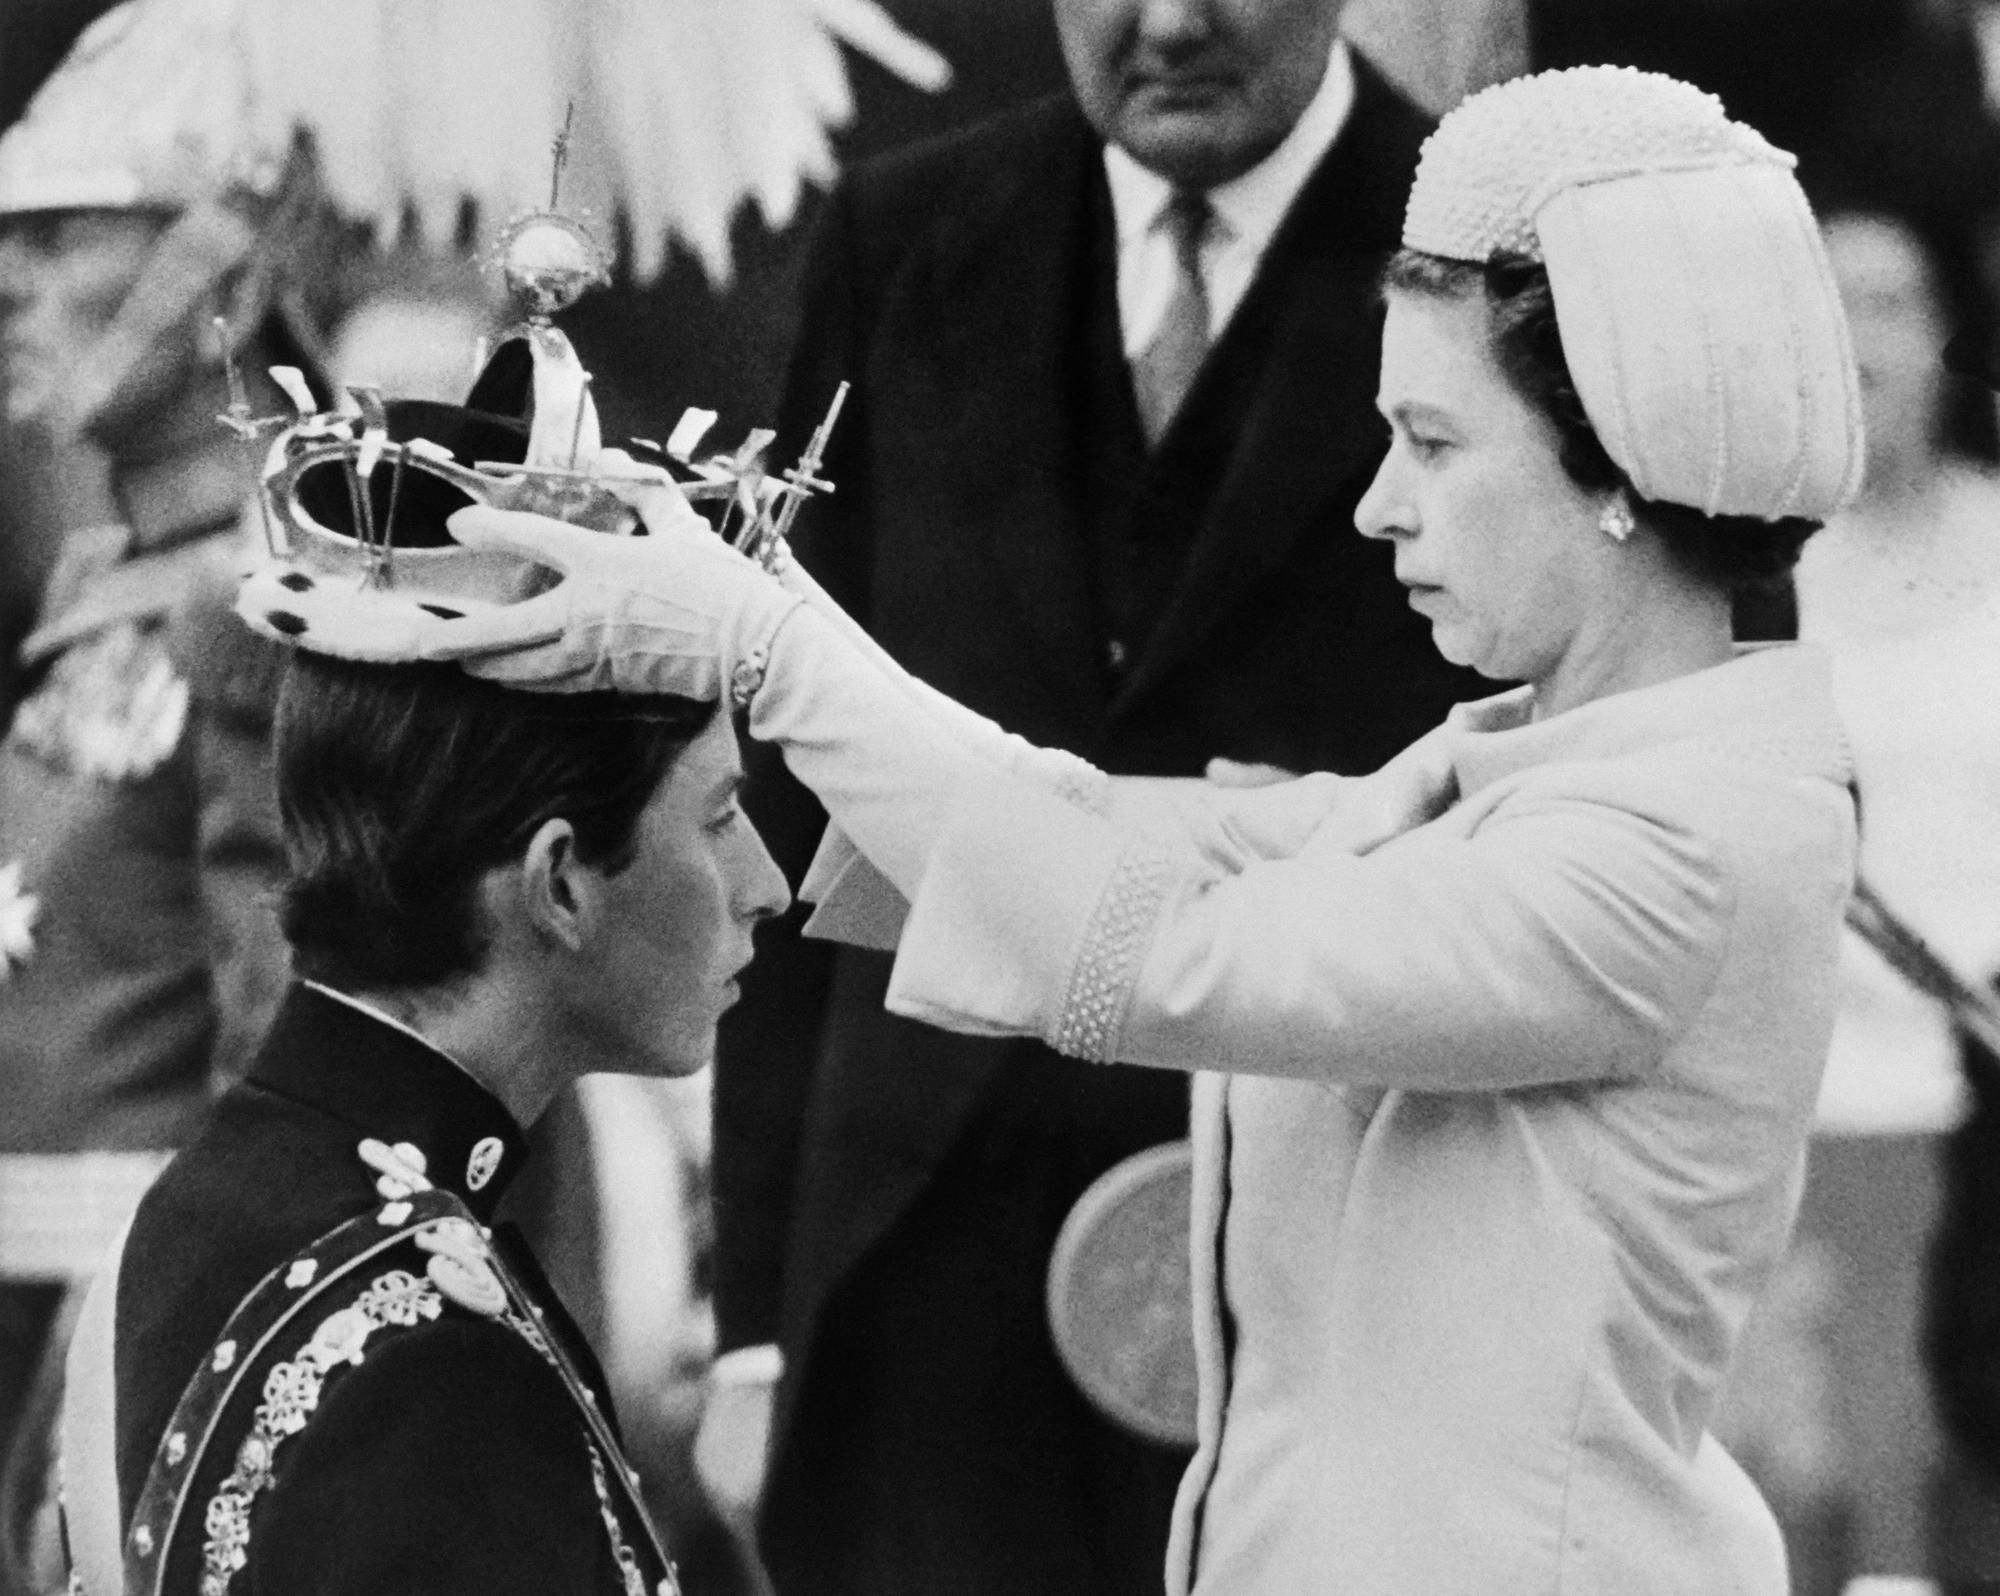 La reine Elizabeth II remet la couronne des princes de Galles à son fils Charles, le 1 juillet 1969. [AFP - CENTRAL PRESS]